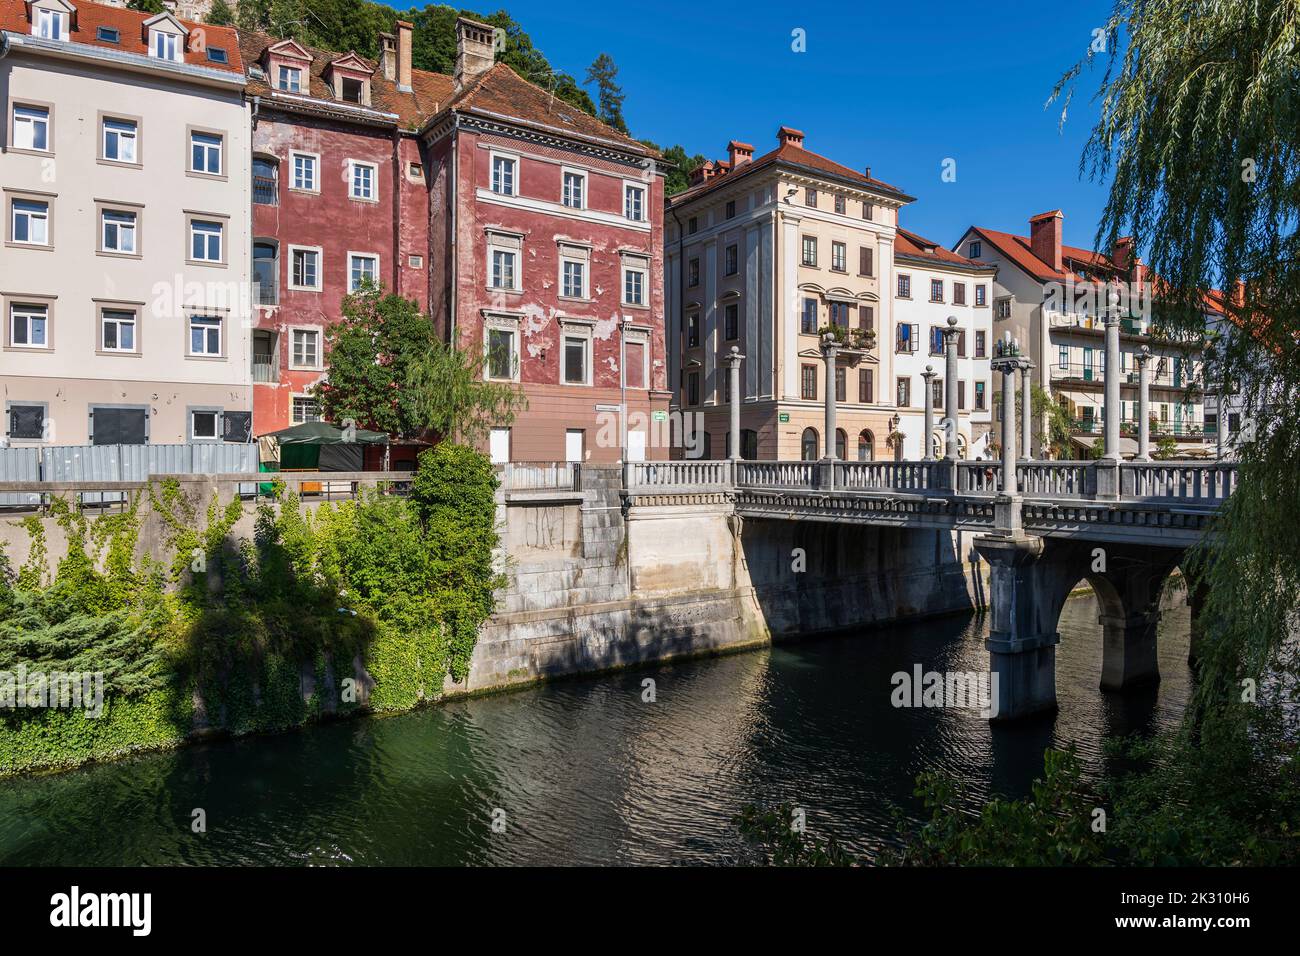 Slovenia, Ljubljana, Old town buildings standing along Ljubljanica river Stock Photo